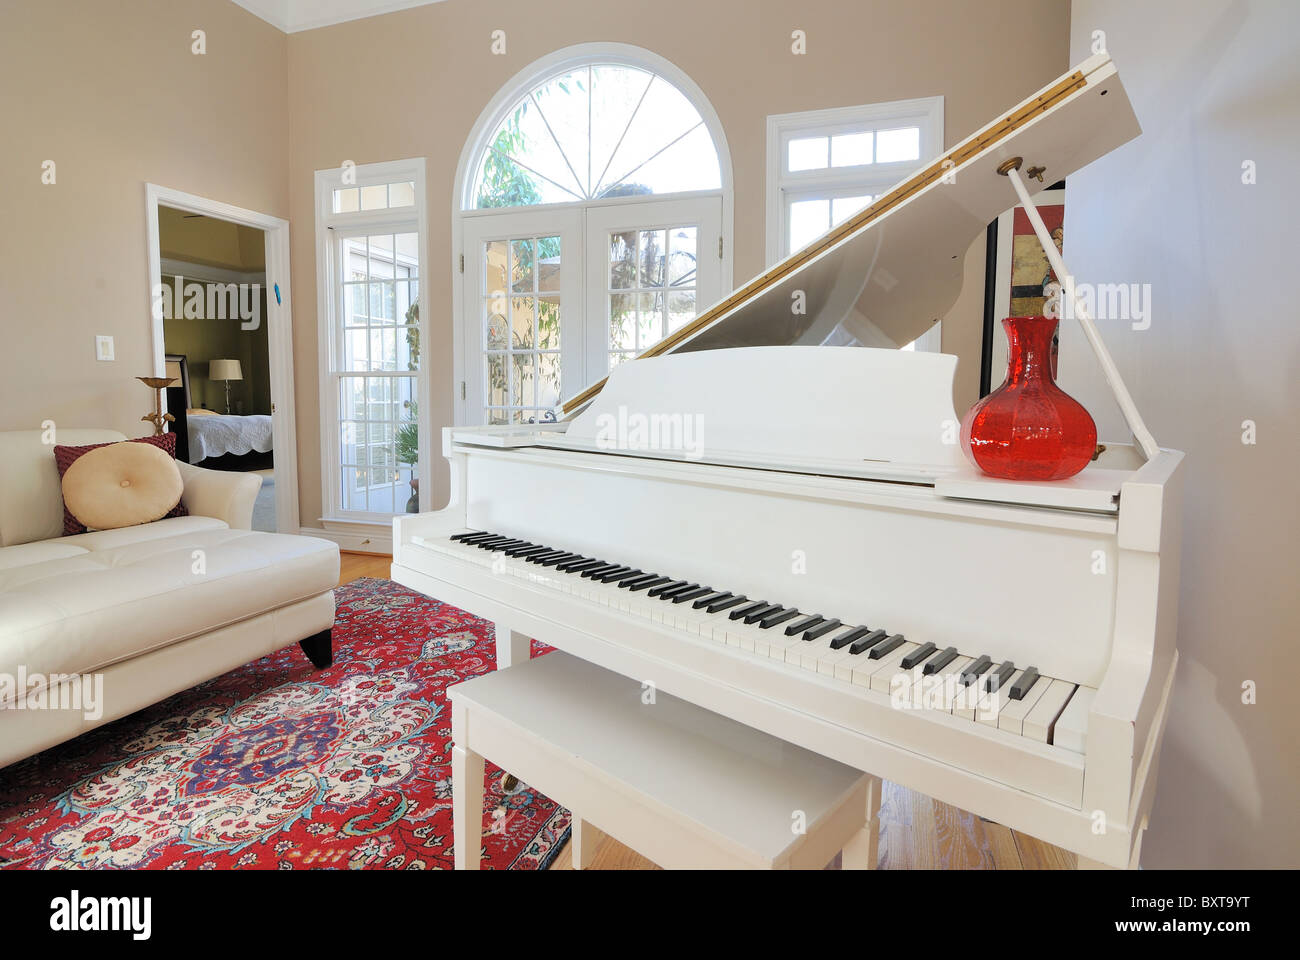 Zeitgenössische Wohnzimmer Einrichtung mit Sofa, Couch, Klavier und Fenster Blick auf die Terrasse Deck. Stockfoto